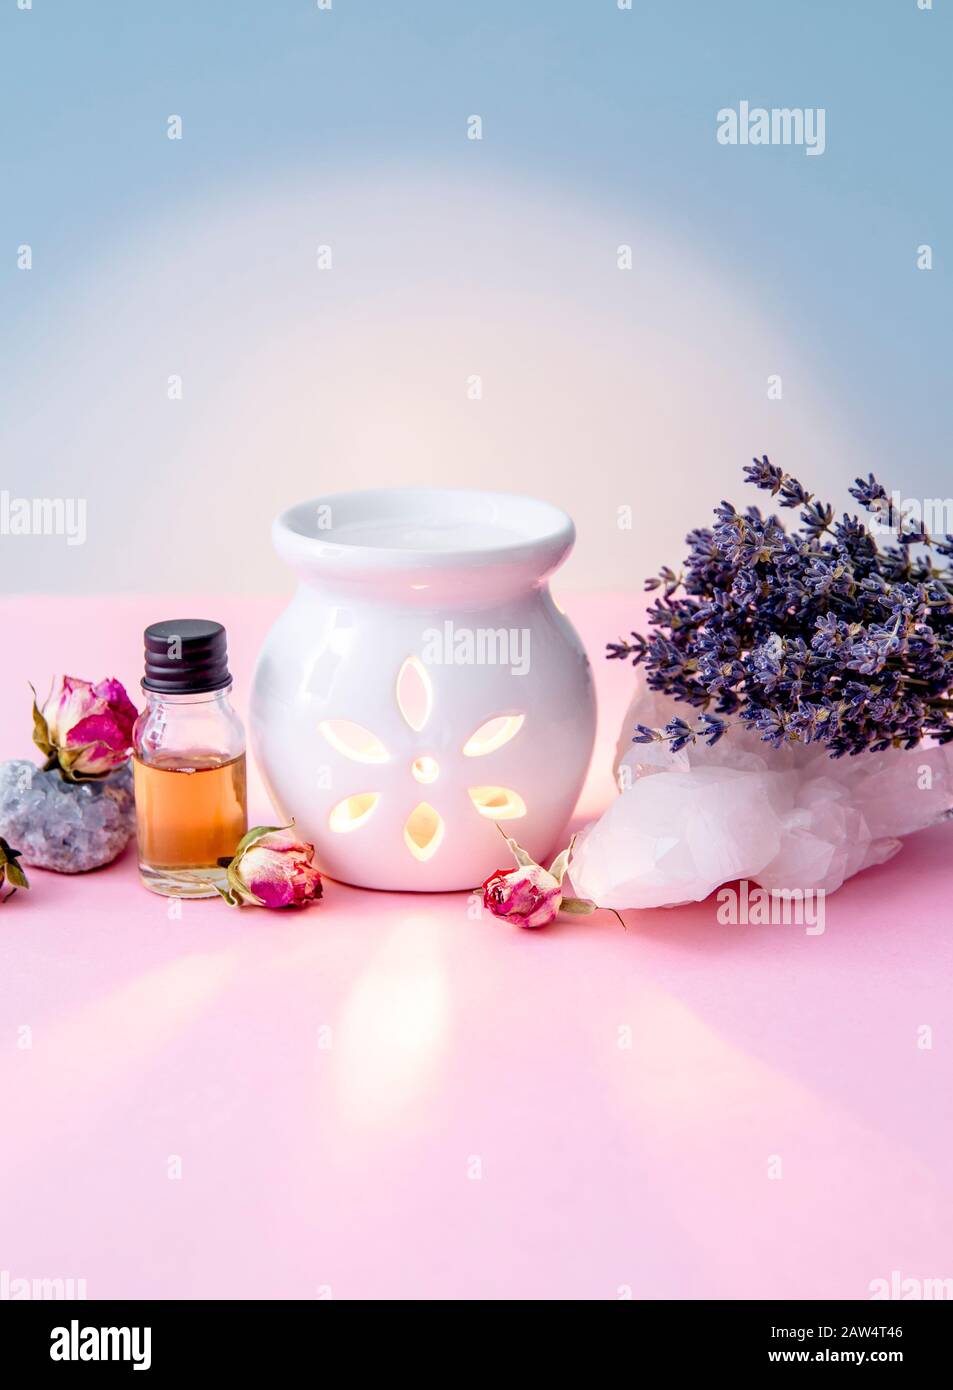 Weiße Kerze Aroma Öllampe mit ätherischem Ölbehälter und getrockneten Blumen, Kristallgeoden auf modernem pastellrosa und blauem Hintergrund im Innenbereich. Stockfoto